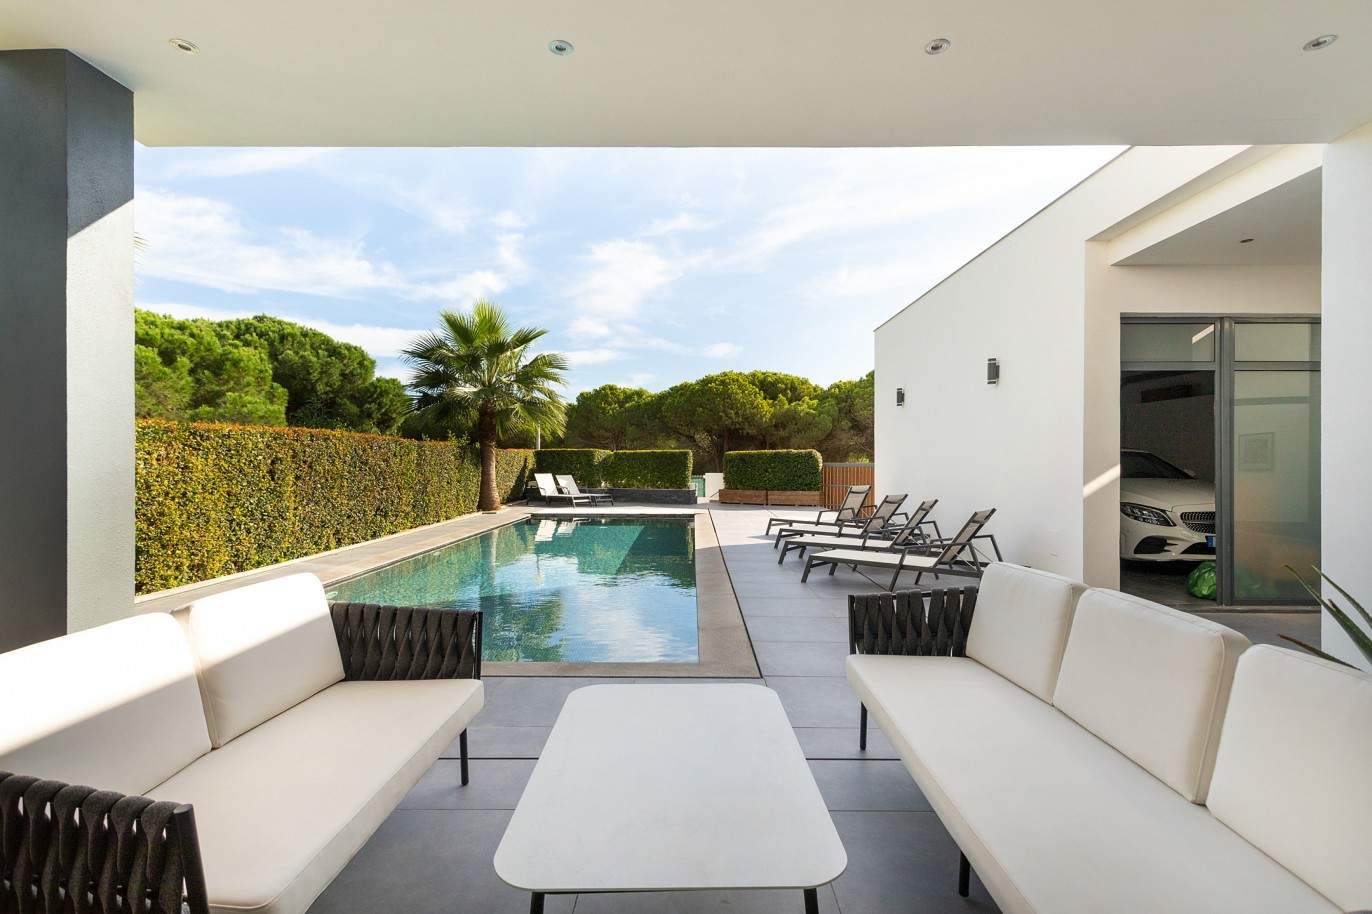 4 Bedroom Villa with swimming pool for sale in Vale do Lobo, Algarve_211205